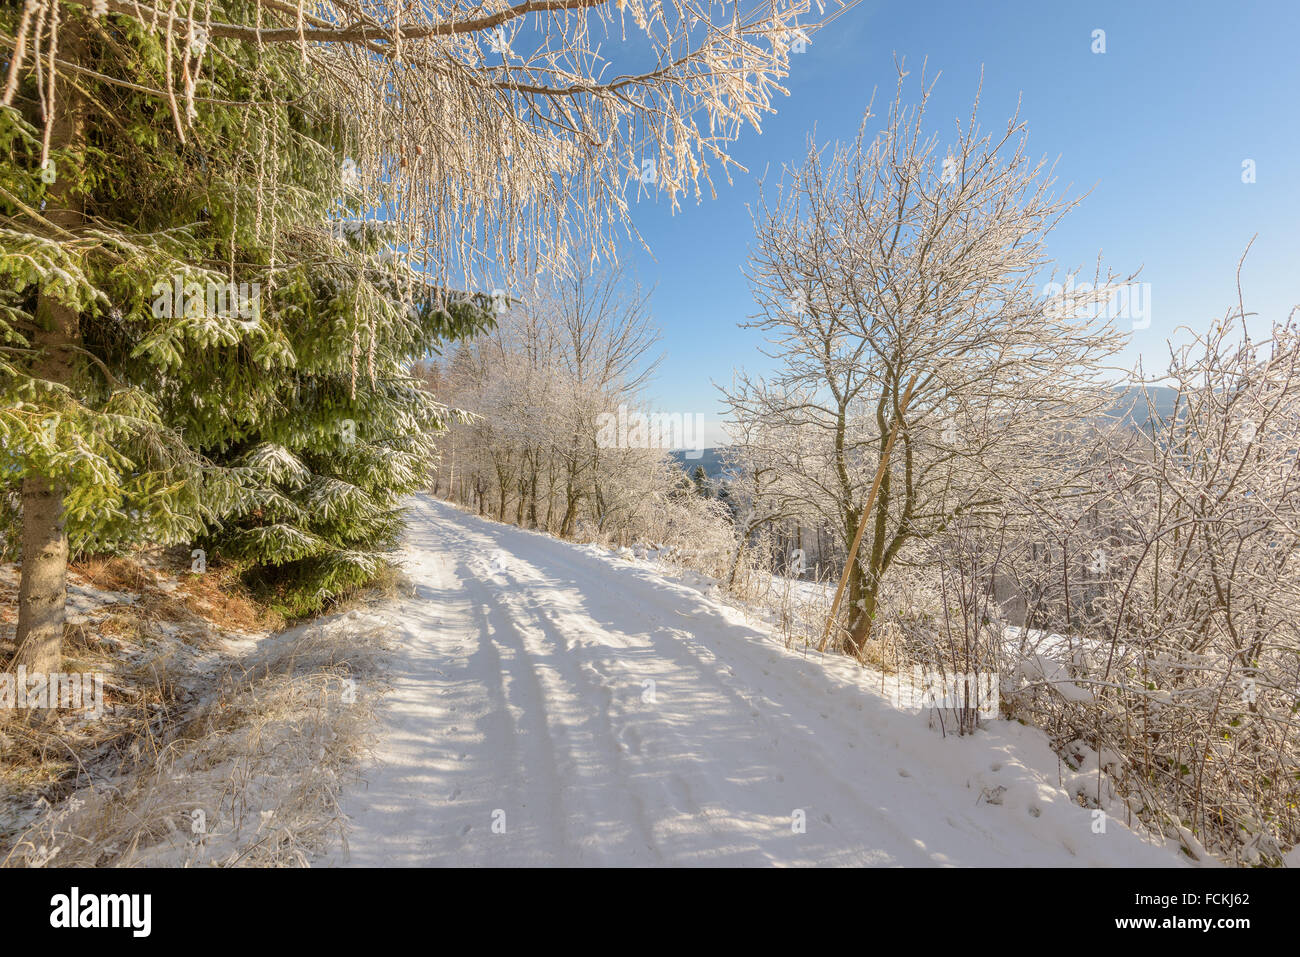 Route de neige dans les montagnes sur une journée froide et ensoleillée Banque D'Images